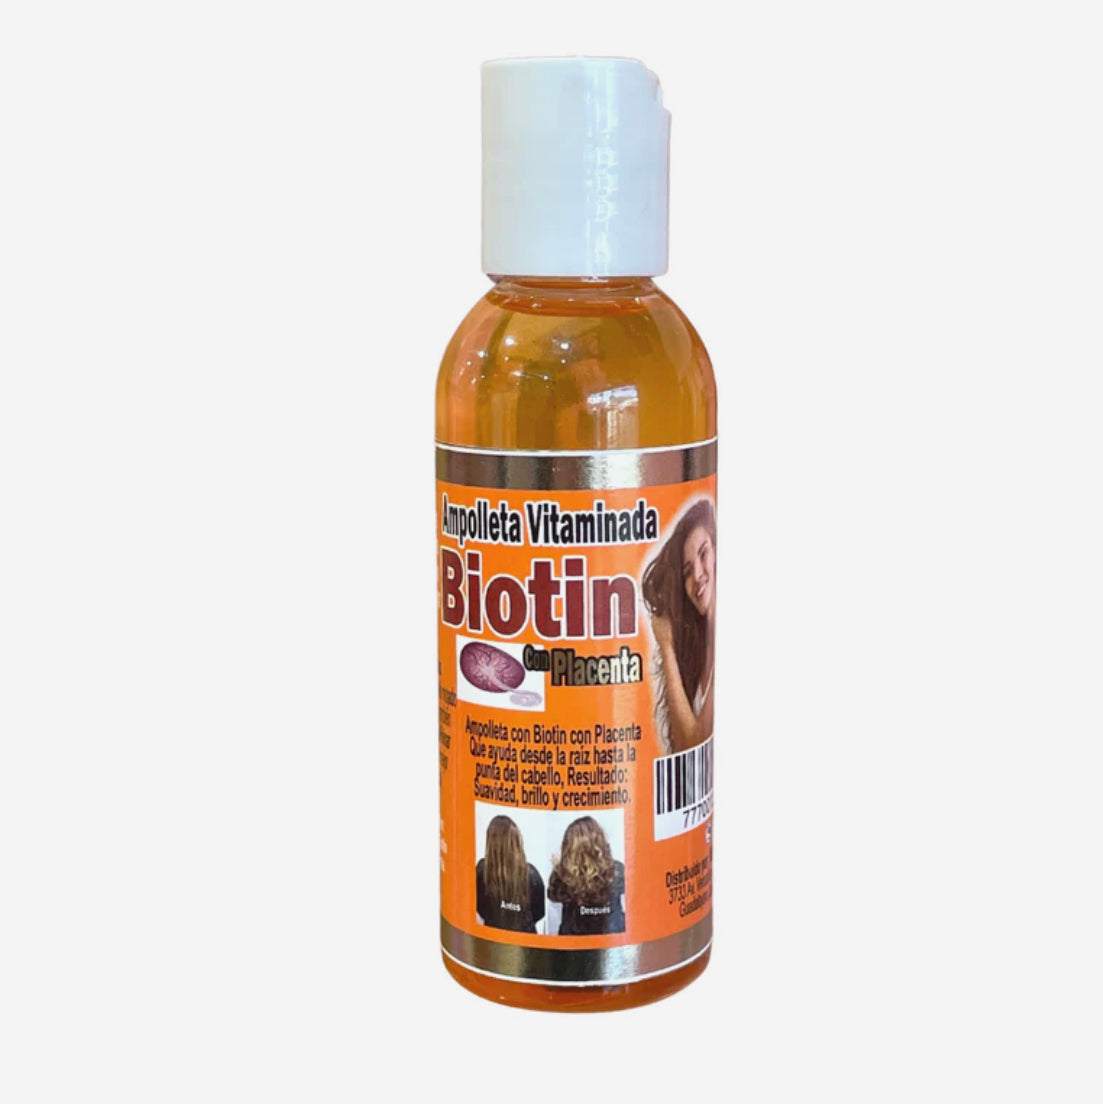 Ampolleta Vitaminda Biotin con Placenta